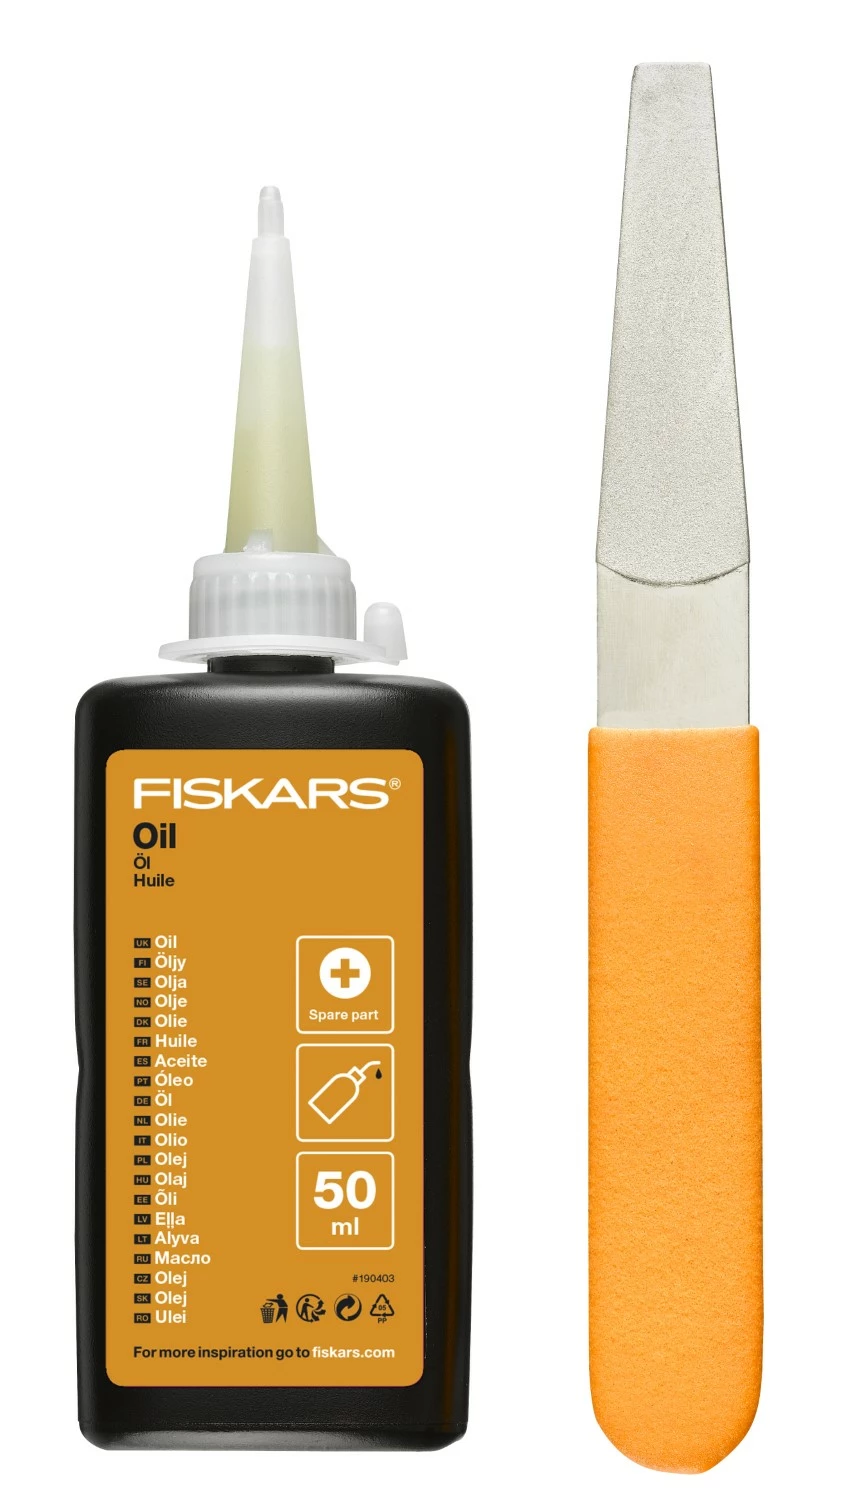 Fiskars - Kit d’entretien pour les outils de coupe - Avec lime diamant - flacon d’huile et guide d’entretien-image